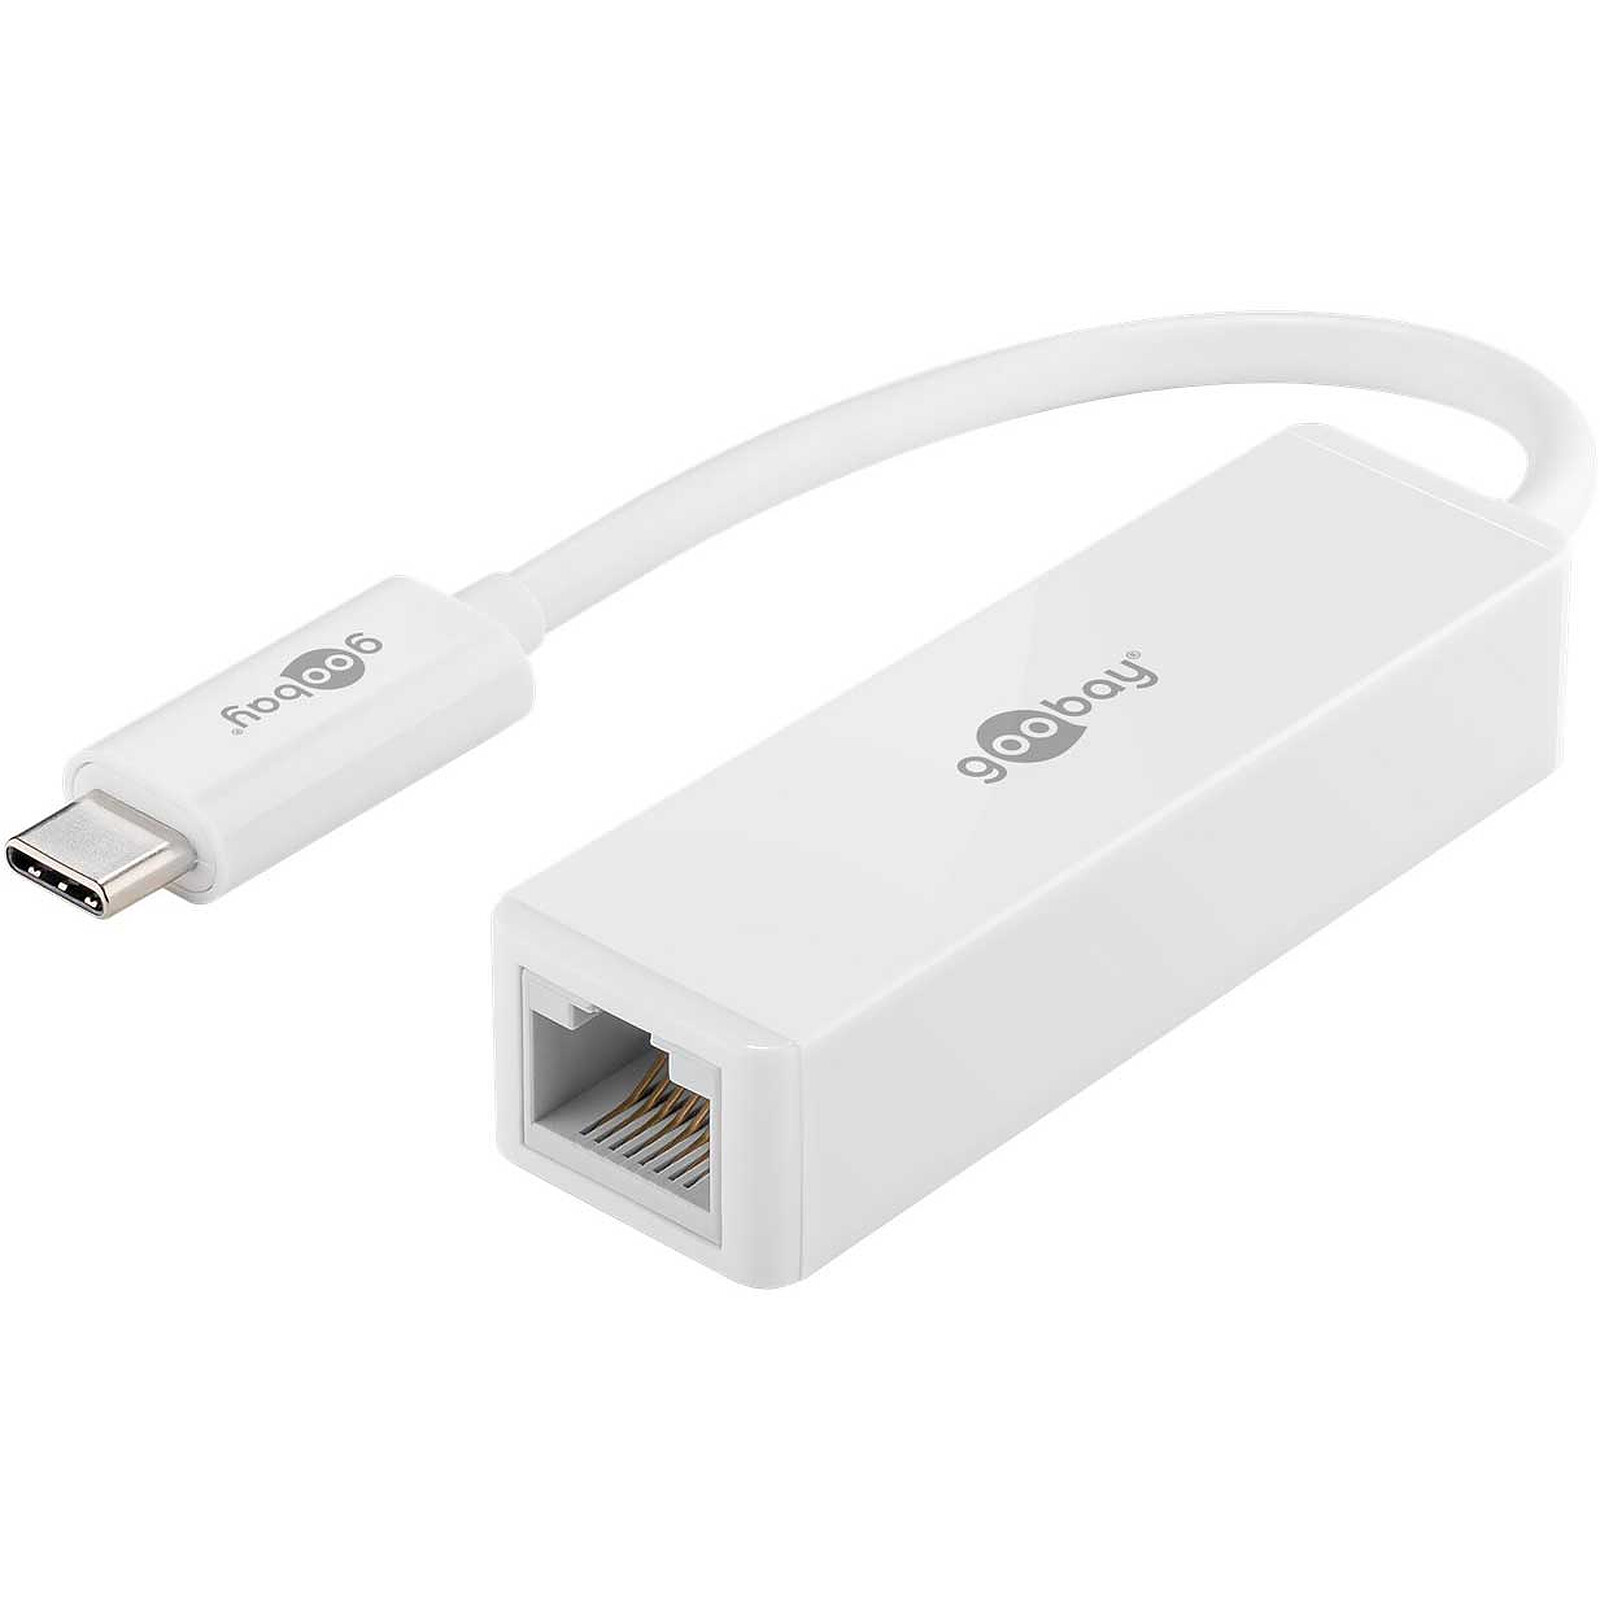 Adaptateur Réseau USB 3.0 à Gigabit Ethernet - 10/100/1000 Mbps, USB à  RJ45, Adaptateur USB 3.0 à LAN, Adaptateur USB 3.0 Ethernet (GbE), Câble de